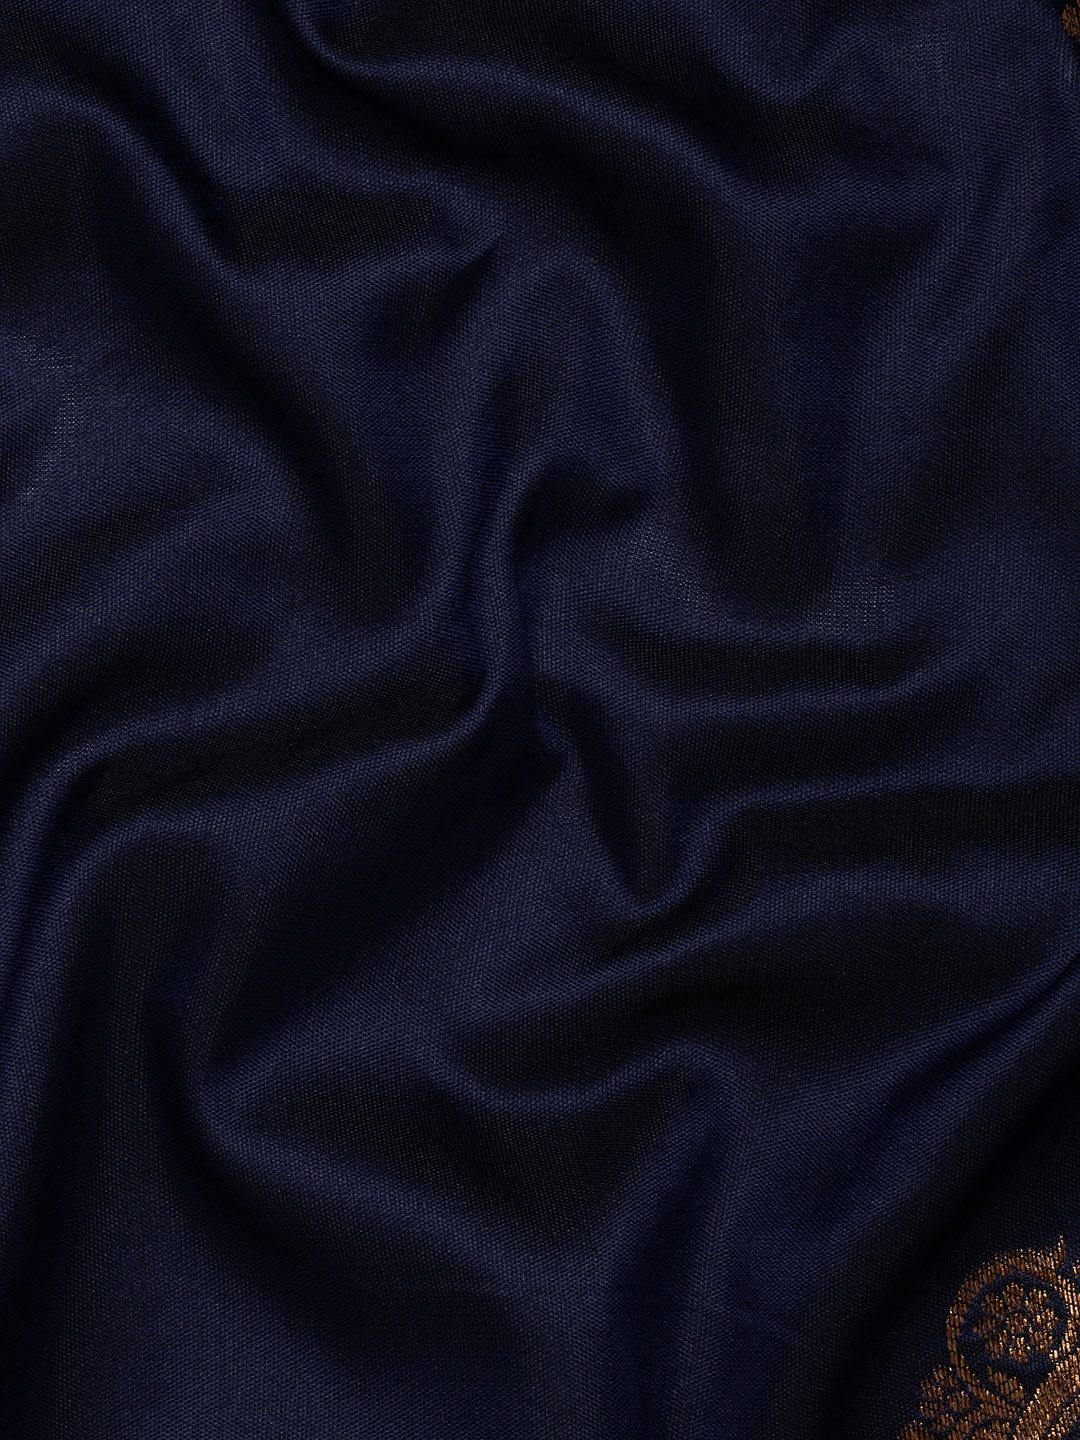 Navy Blue color Indian Silk Sarees